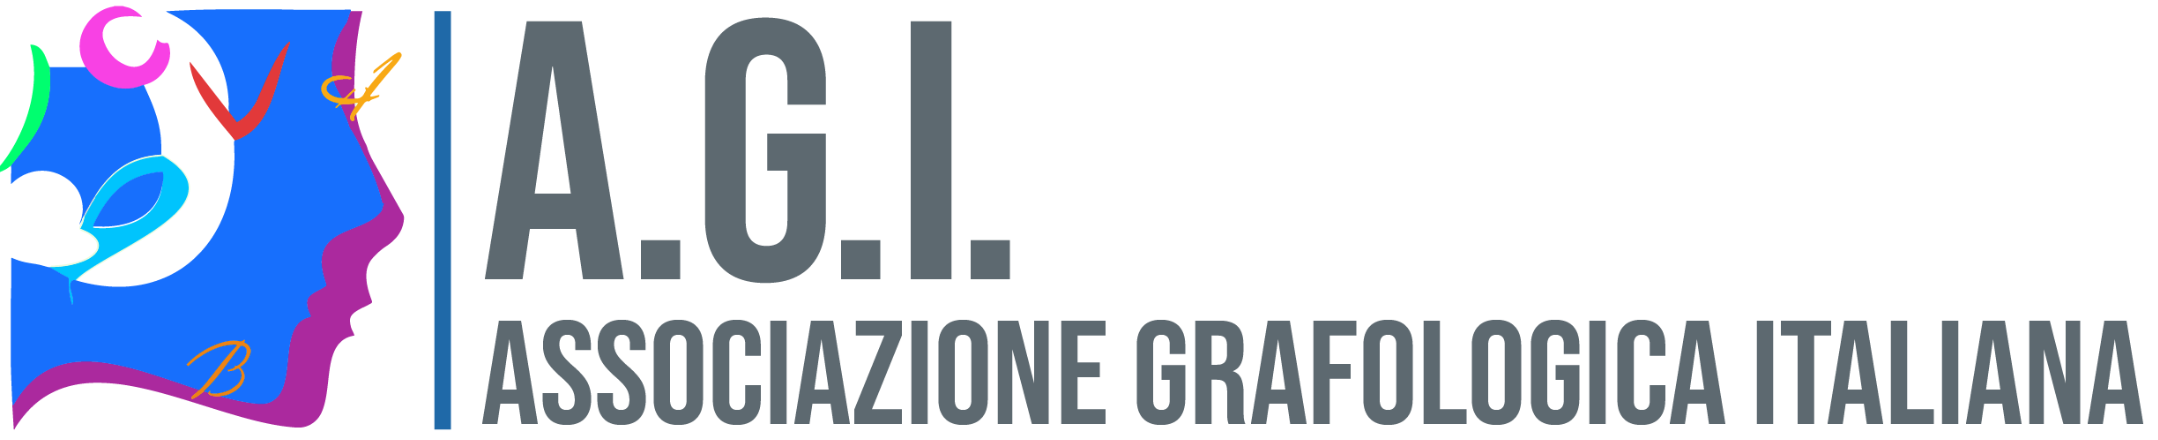 AGI Associazione Grafologica Italiana